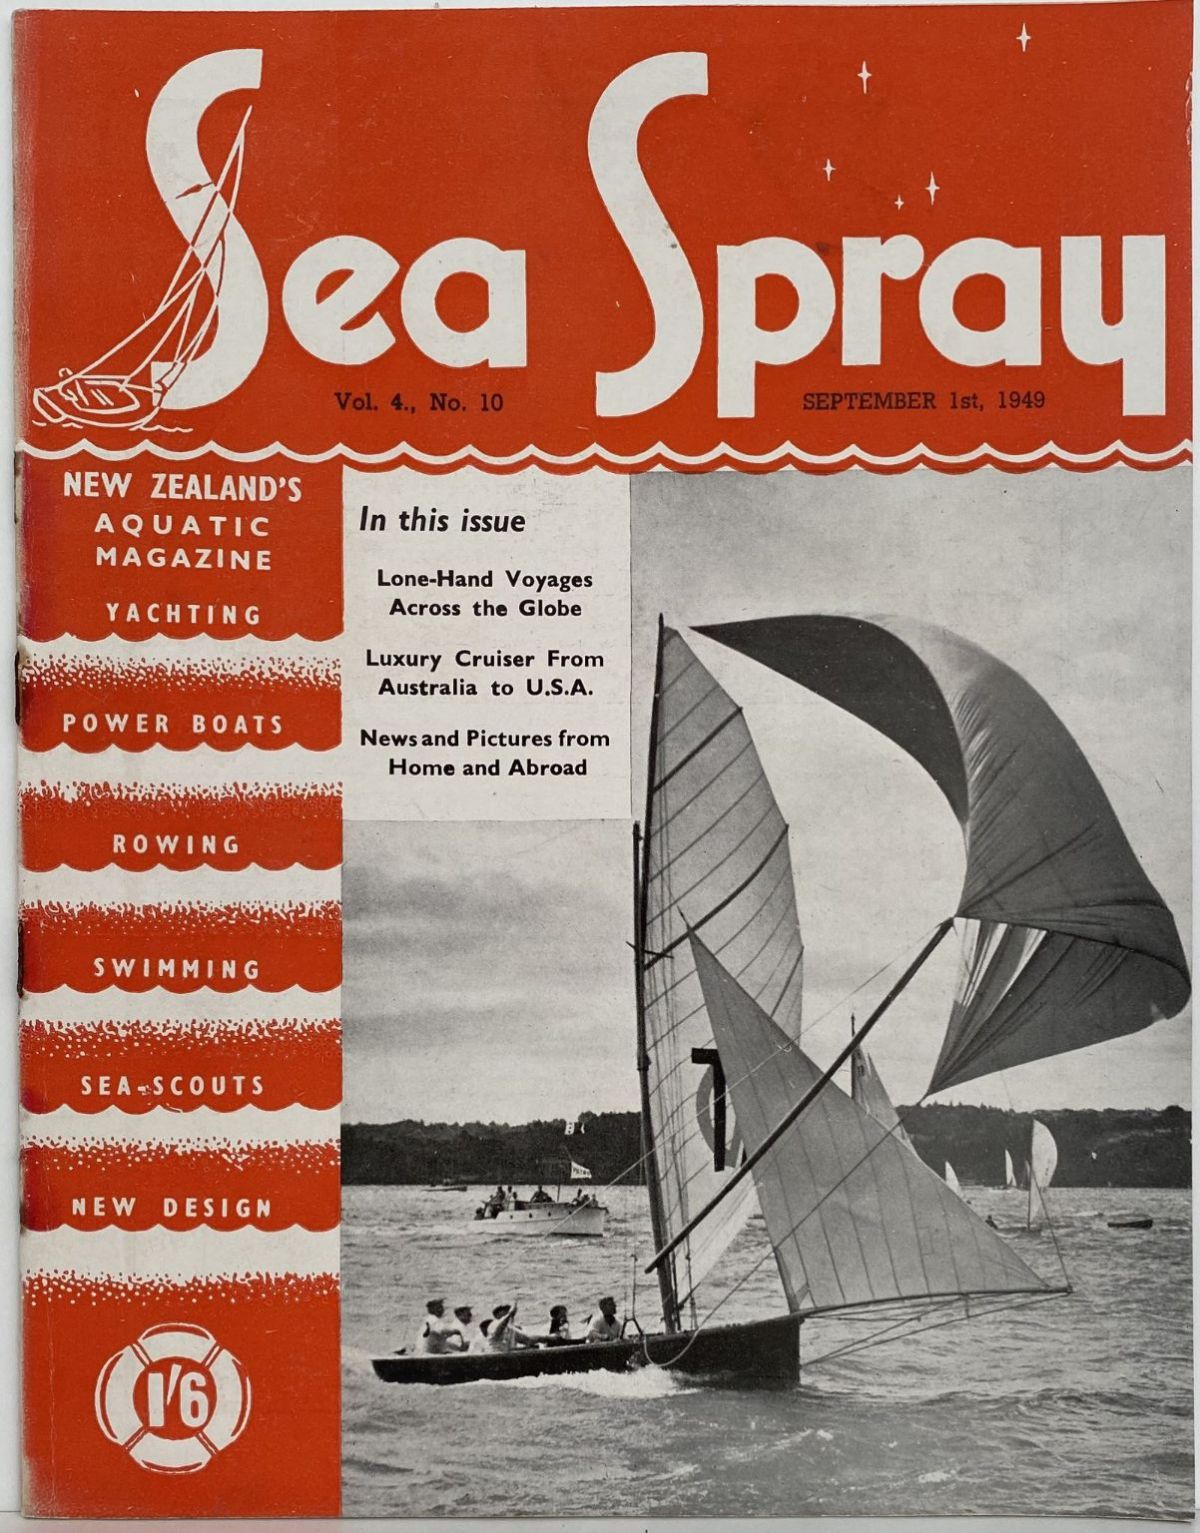 VINTAGE MAGAZINE: Sea Spray - Vol. 4, No. 10 - September 1949